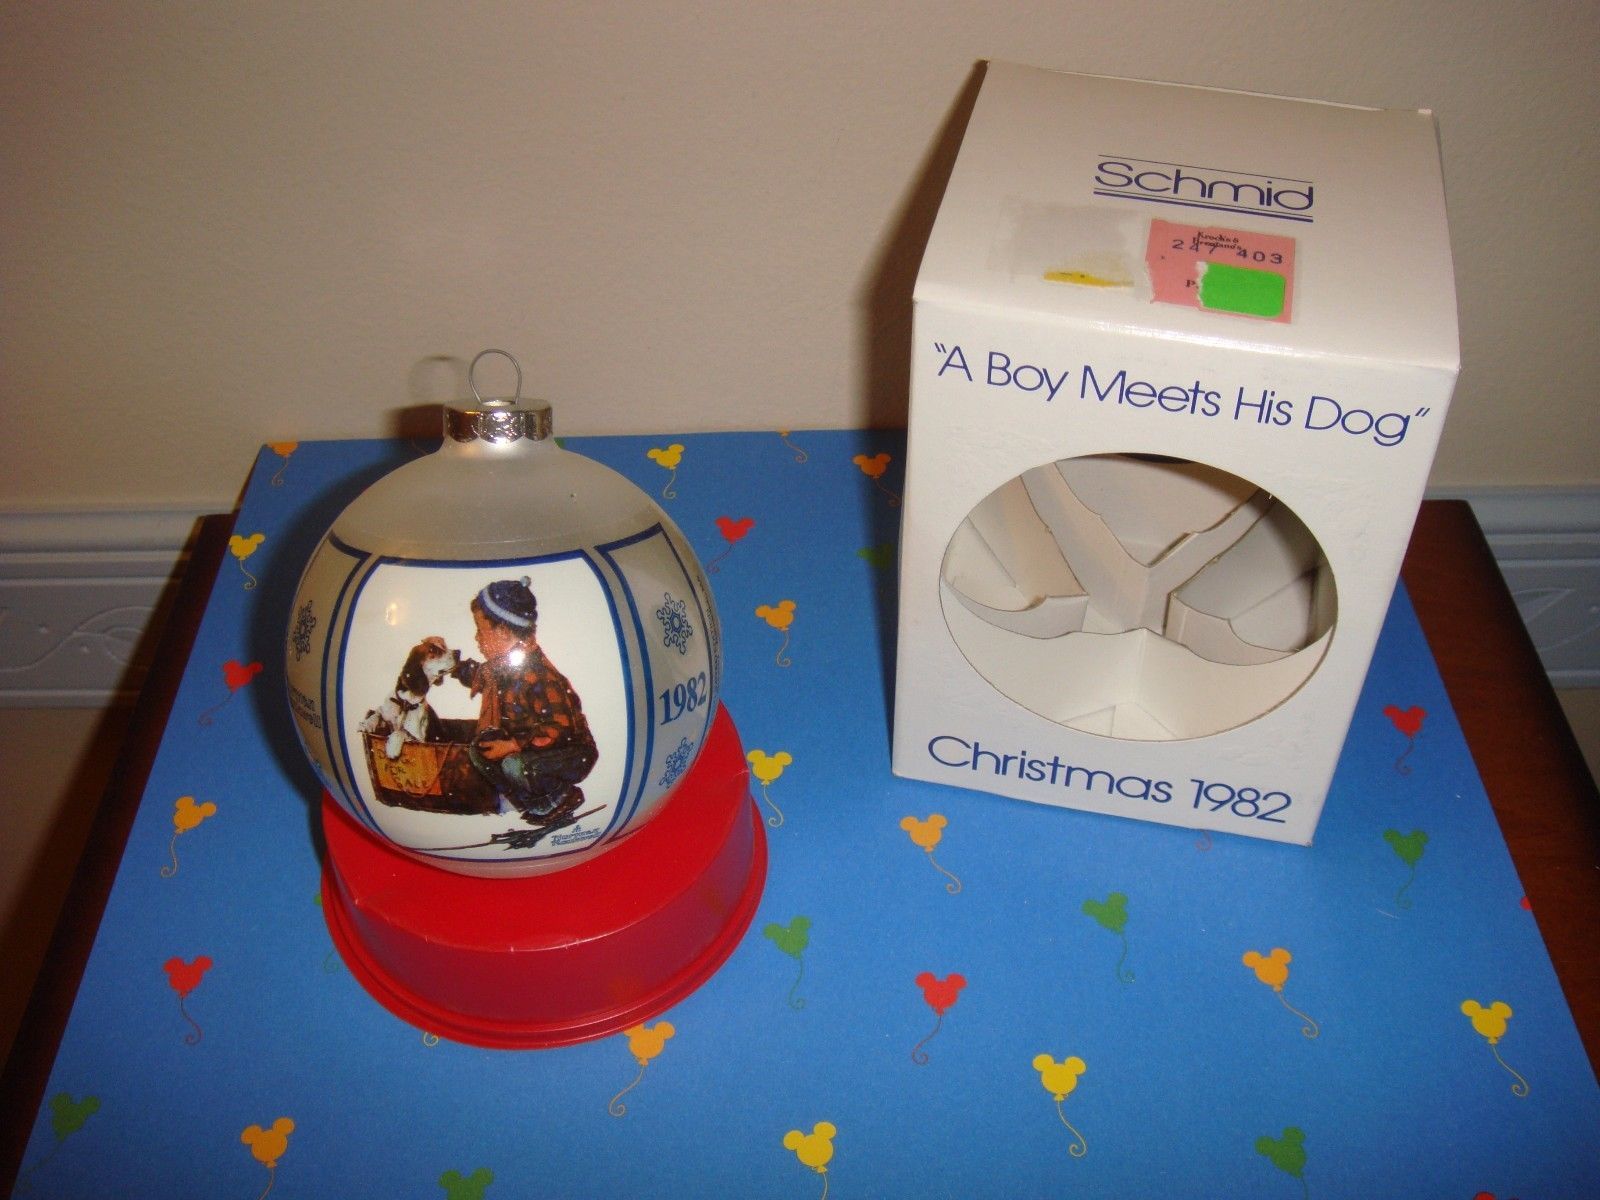 Schmid 1982 Norman Rockwell A Boy Meets His Dog Ornament - $13.99